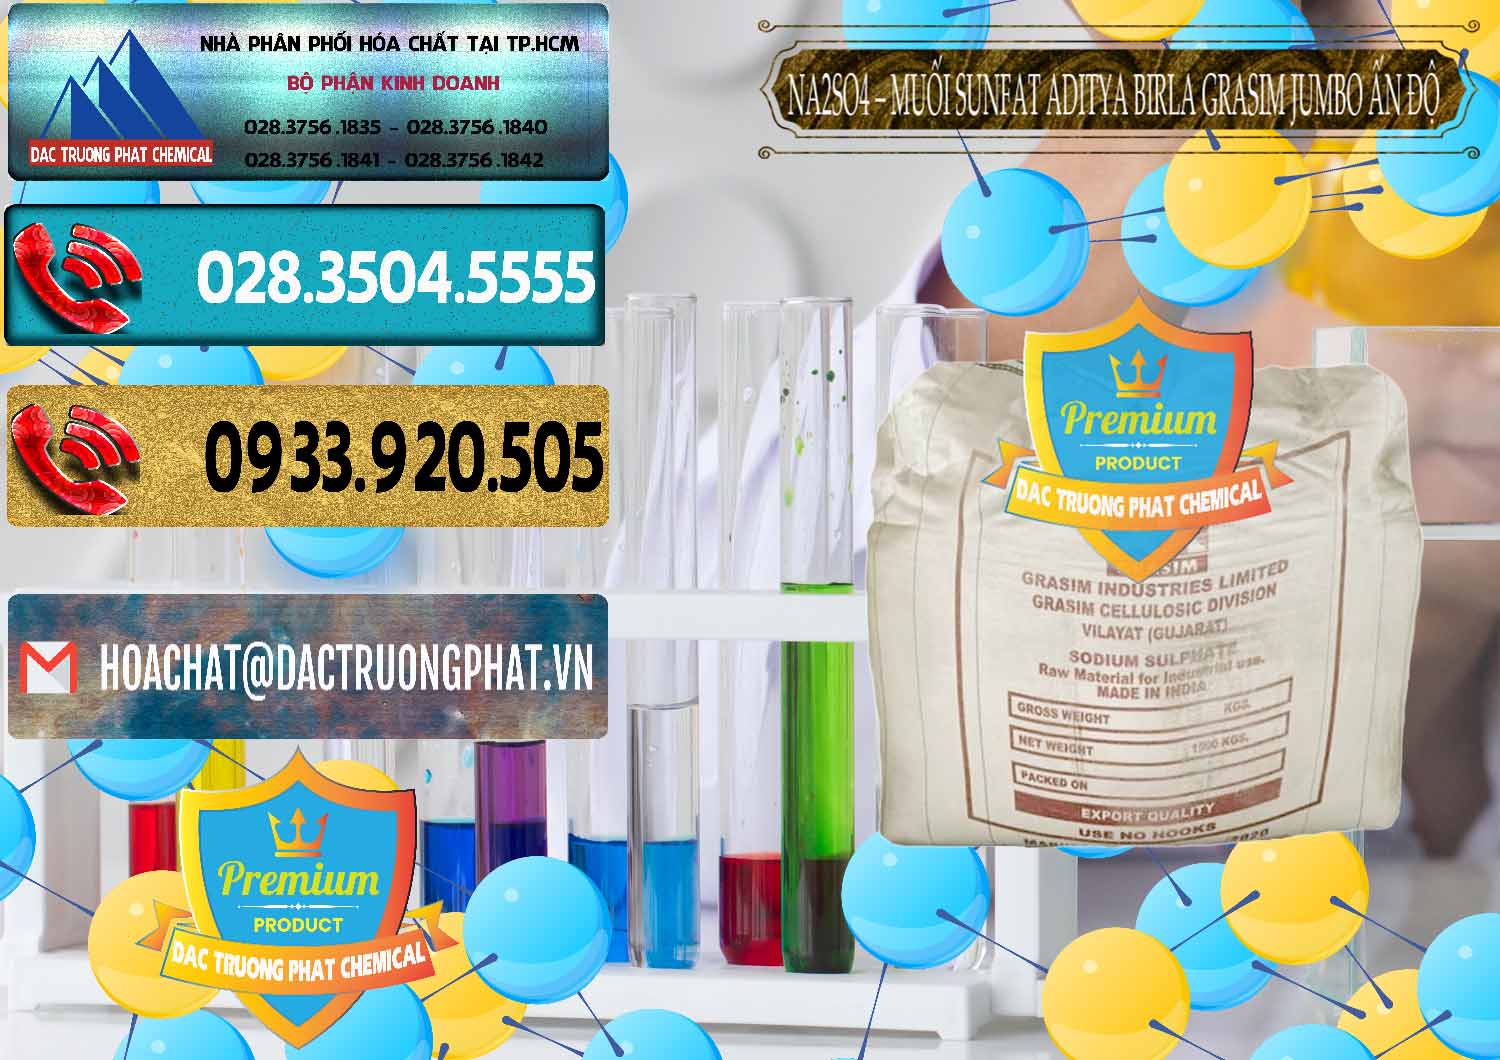 Công ty bán & cung cấp Sodium Sulphate - Muối Sunfat Na2SO4 Jumbo Bành Aditya Birla Grasim Ấn Độ India - 0357 - Cty cung cấp - bán hóa chất tại TP.HCM - hoachatdetnhuom.com